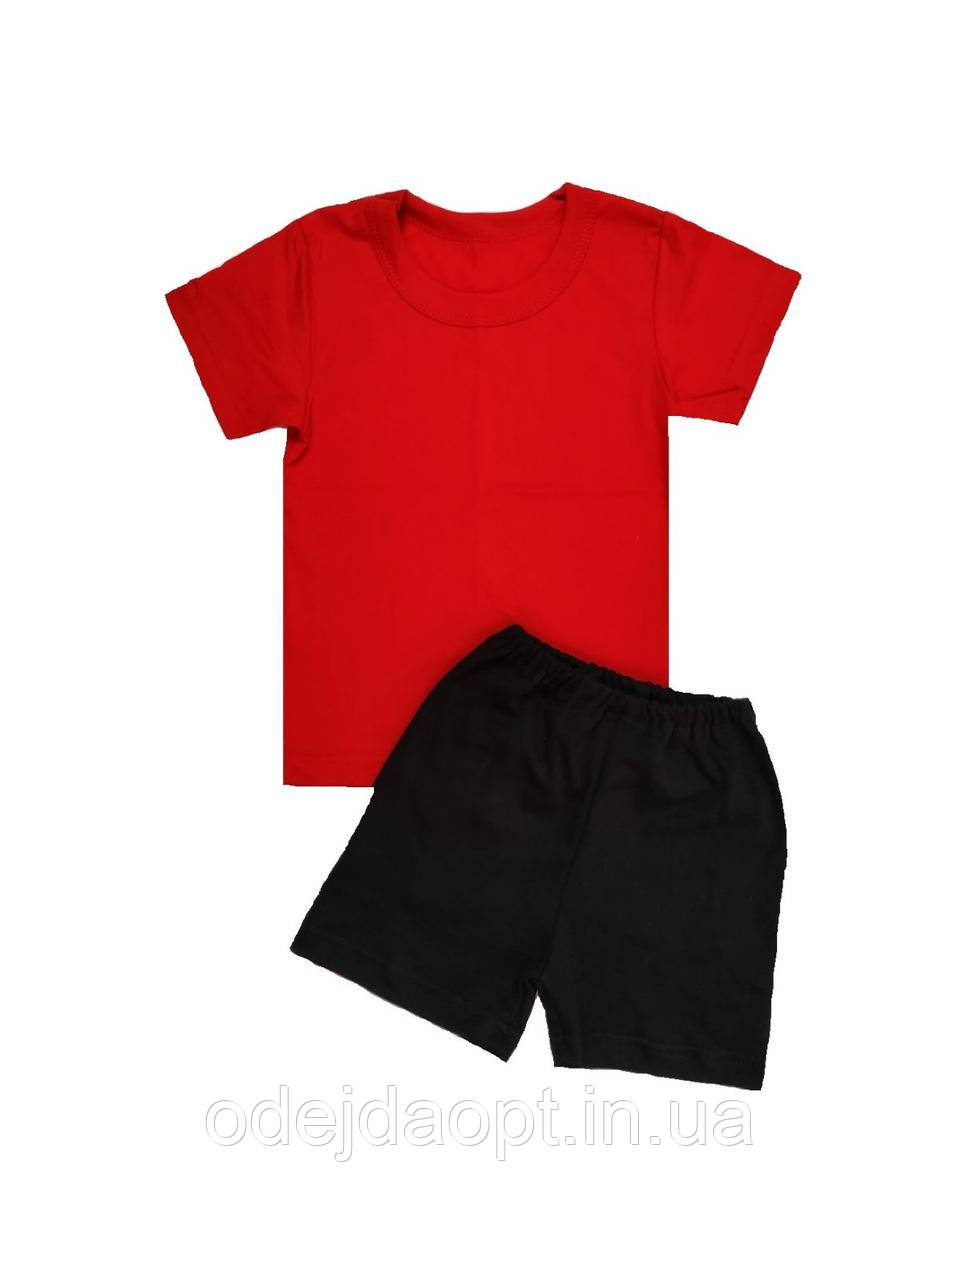 Дитячий комплект червона футболка та чорні шорти 2,3,4,5,6,7,8 років